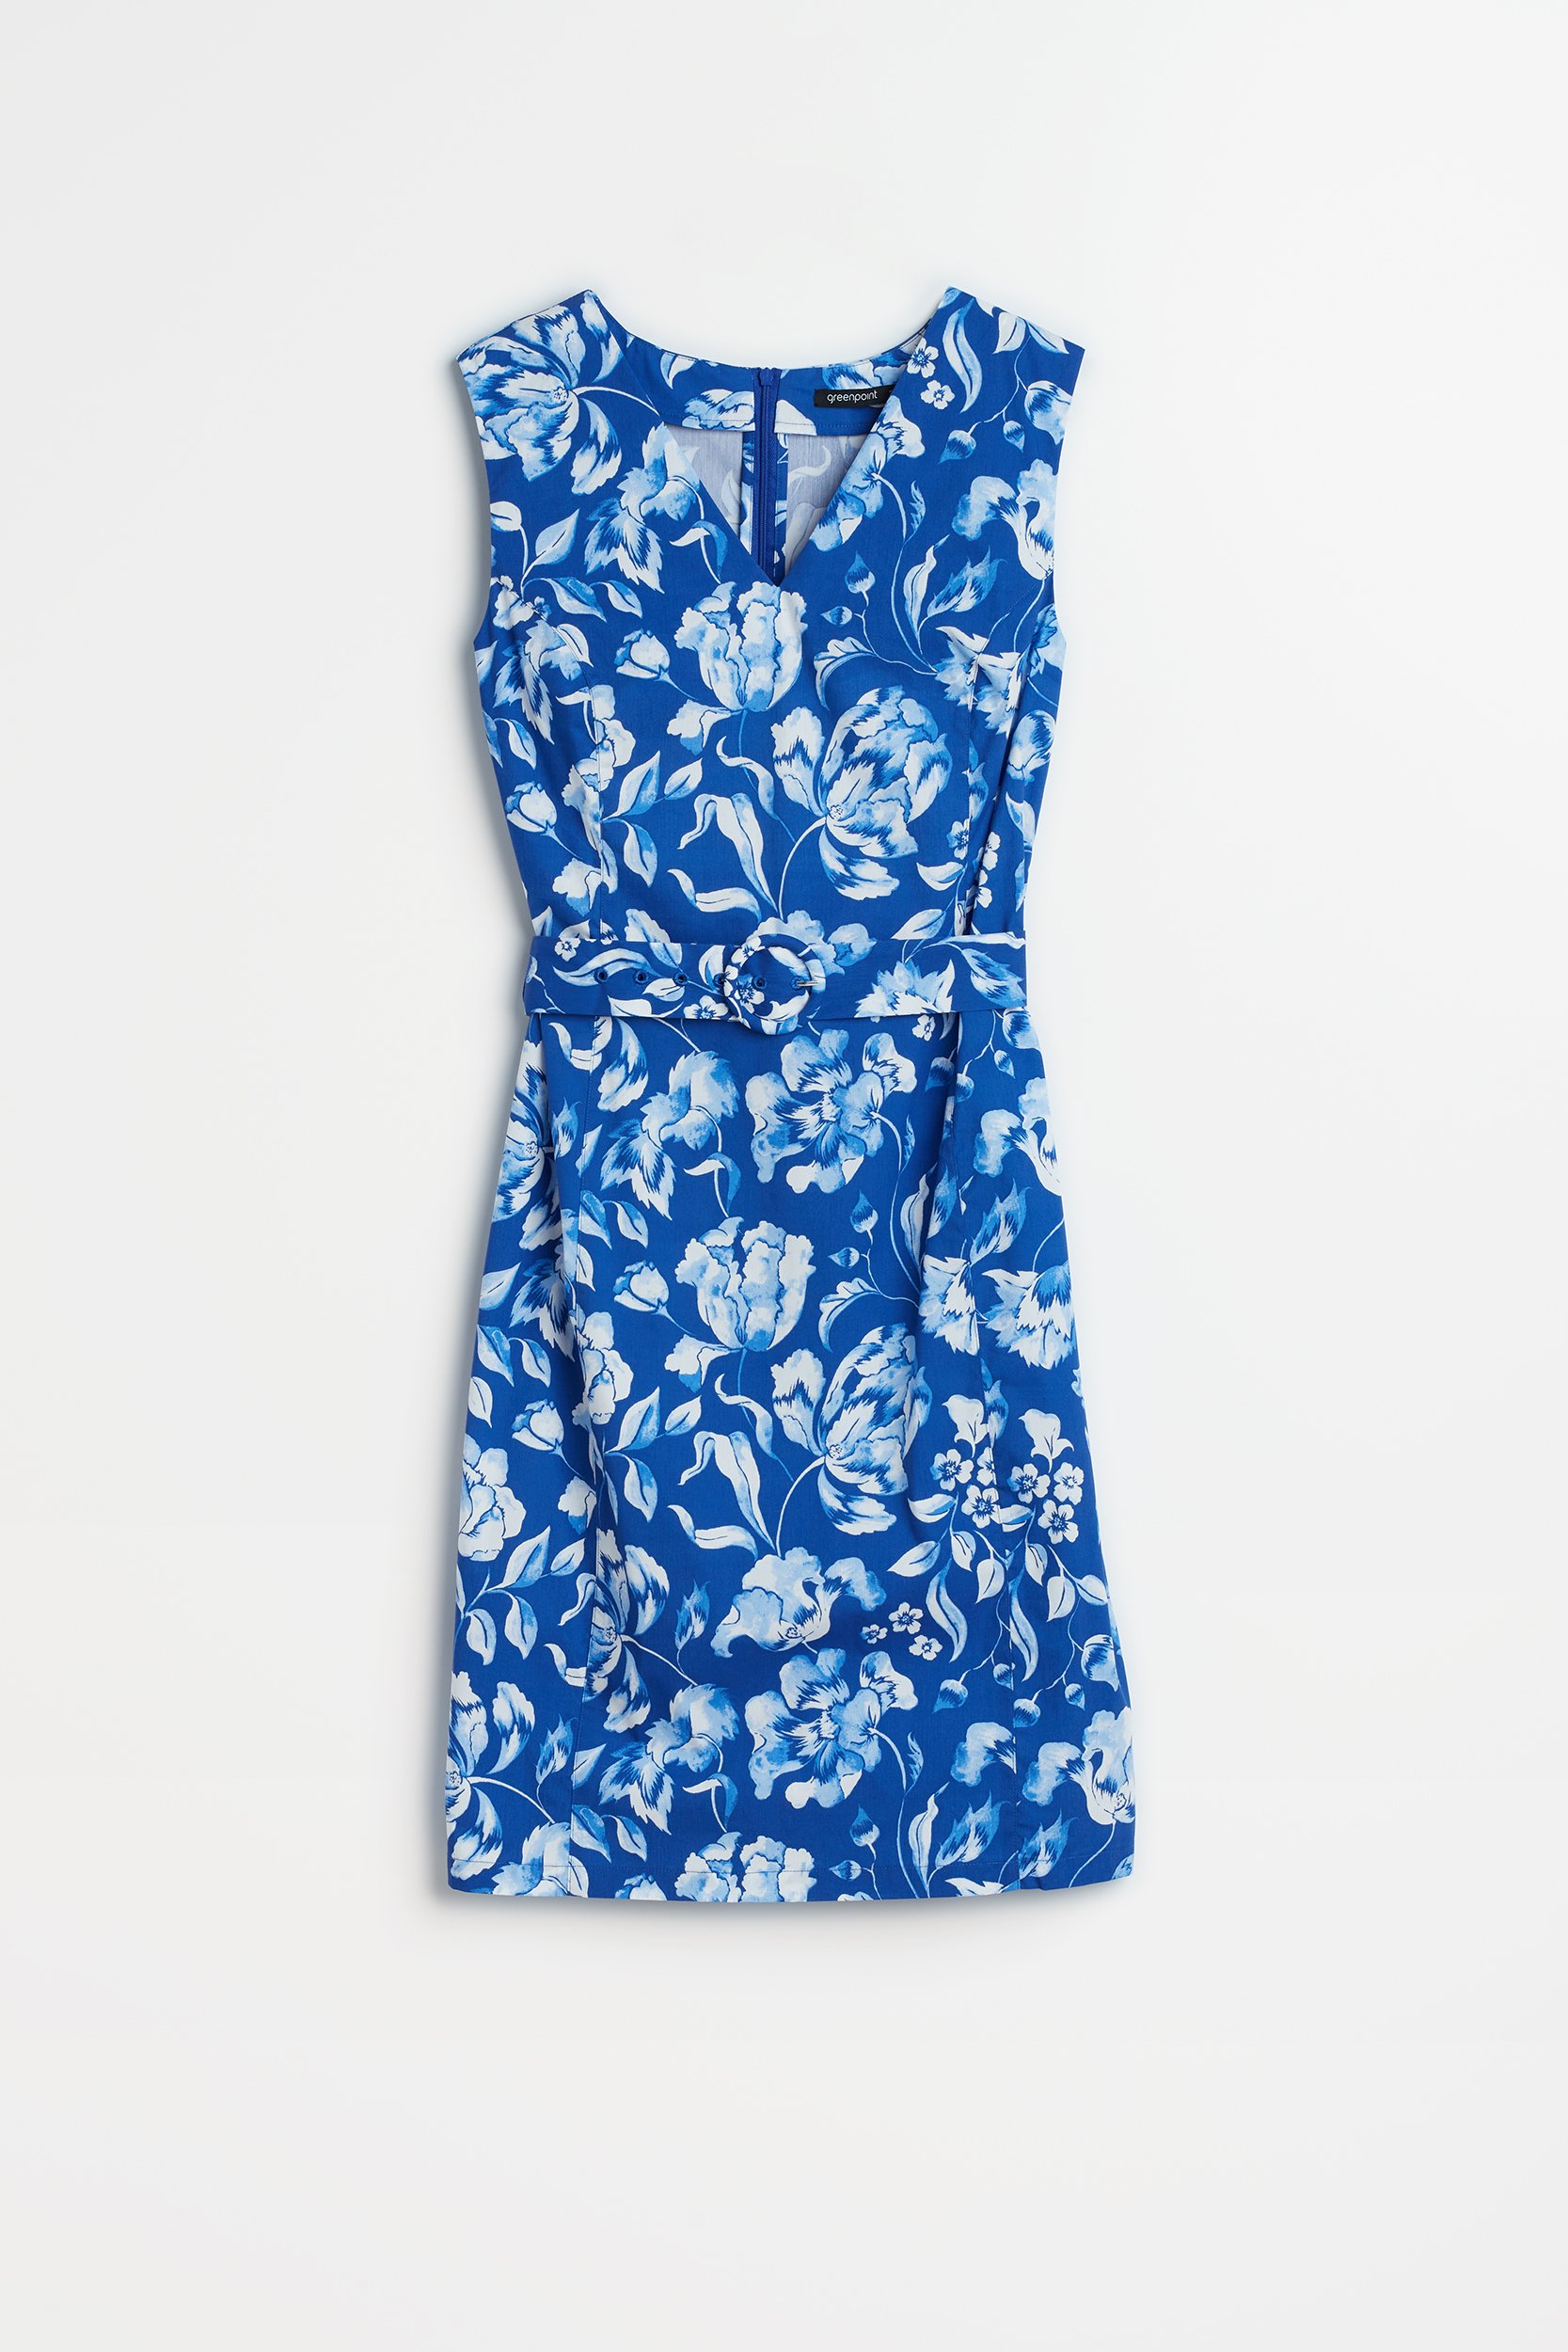 Dopasowana sukienka z nadrukiem w kwiaty kobalt